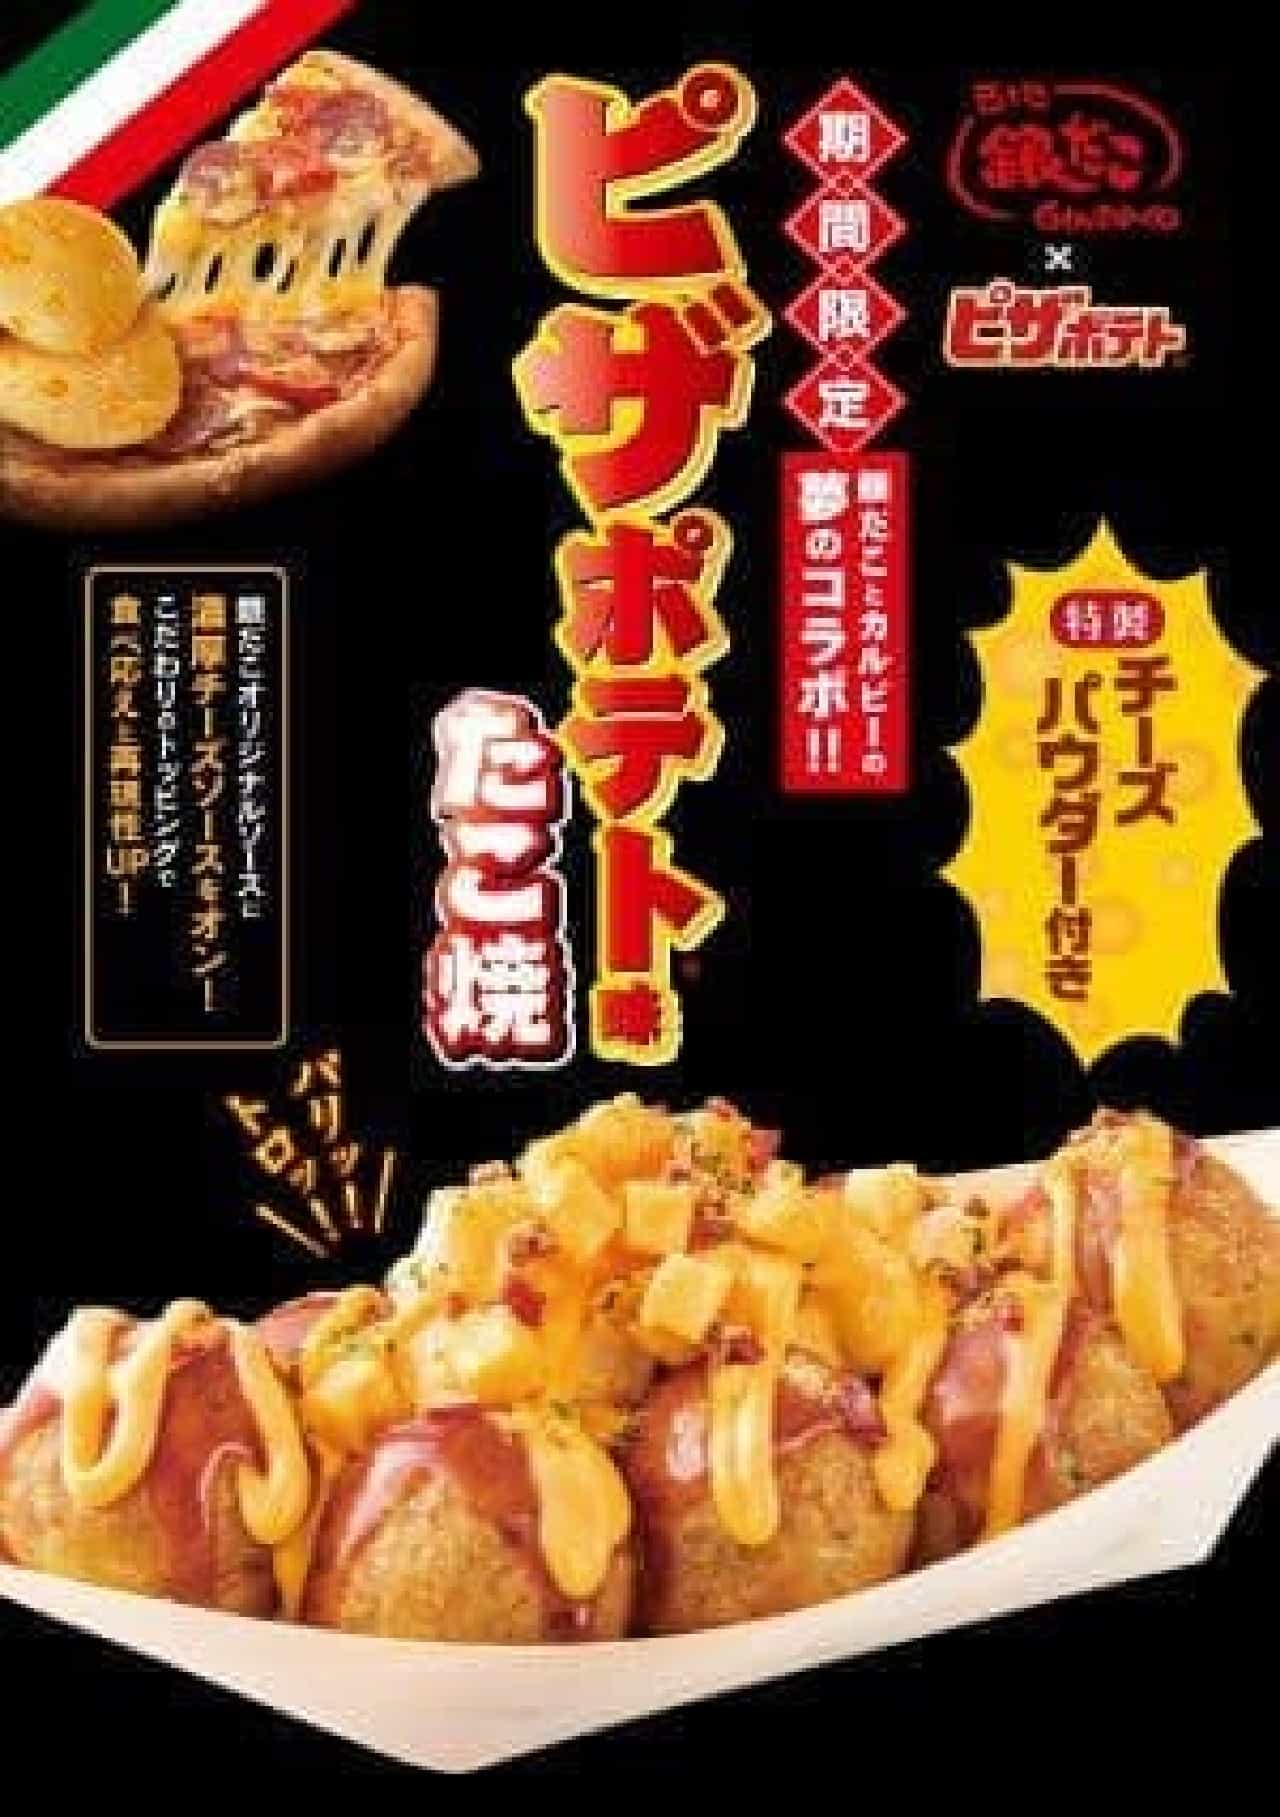 Tsukiji Gindaco "Pizza Potato Takoyaki"